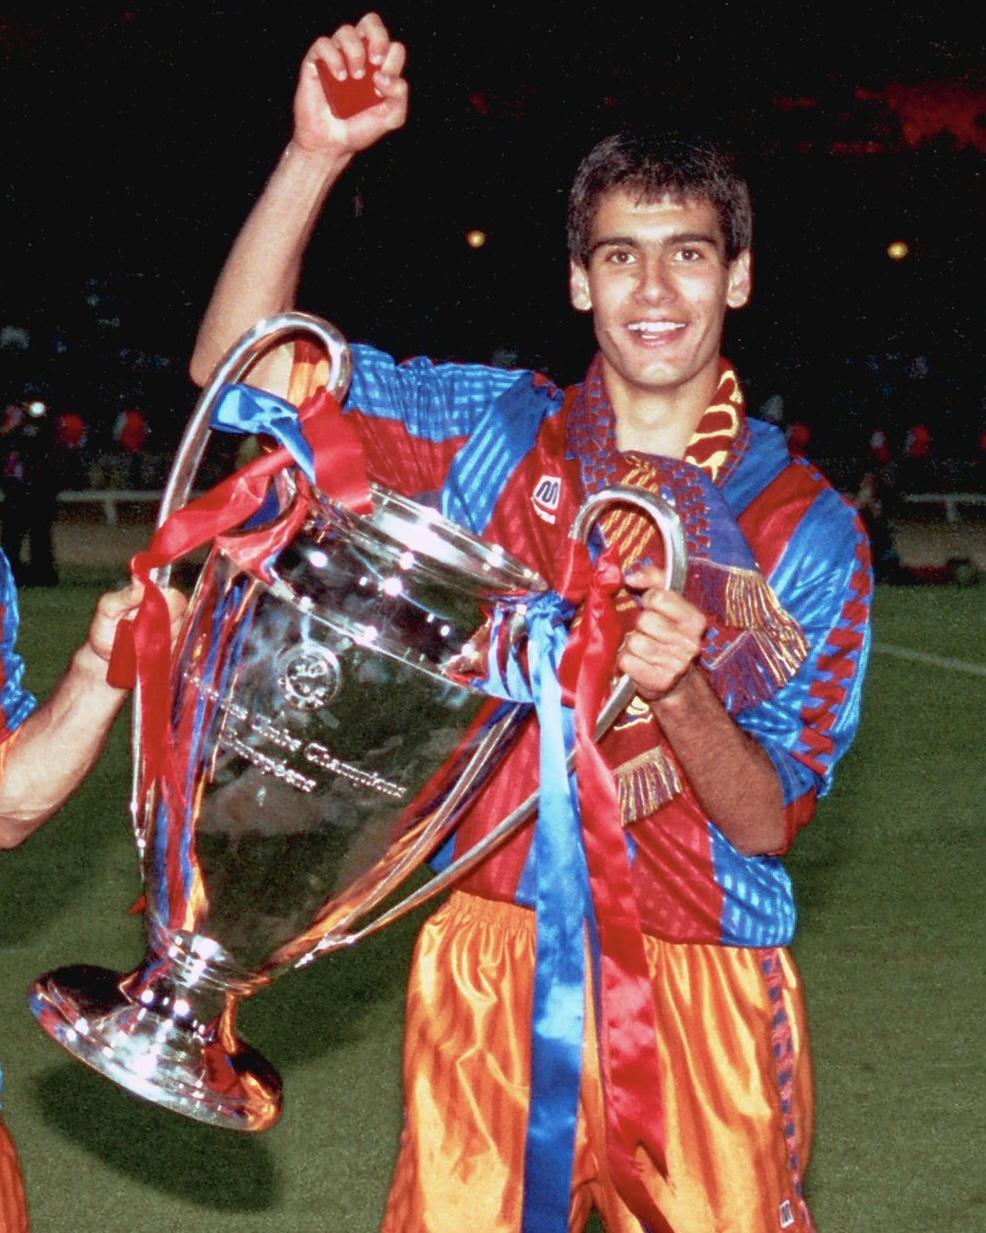 Pep Guardiola, ainda como jogador do Barcelona, levantando a taça de campeão da Liga dos Campeões (UEFA Champions League)